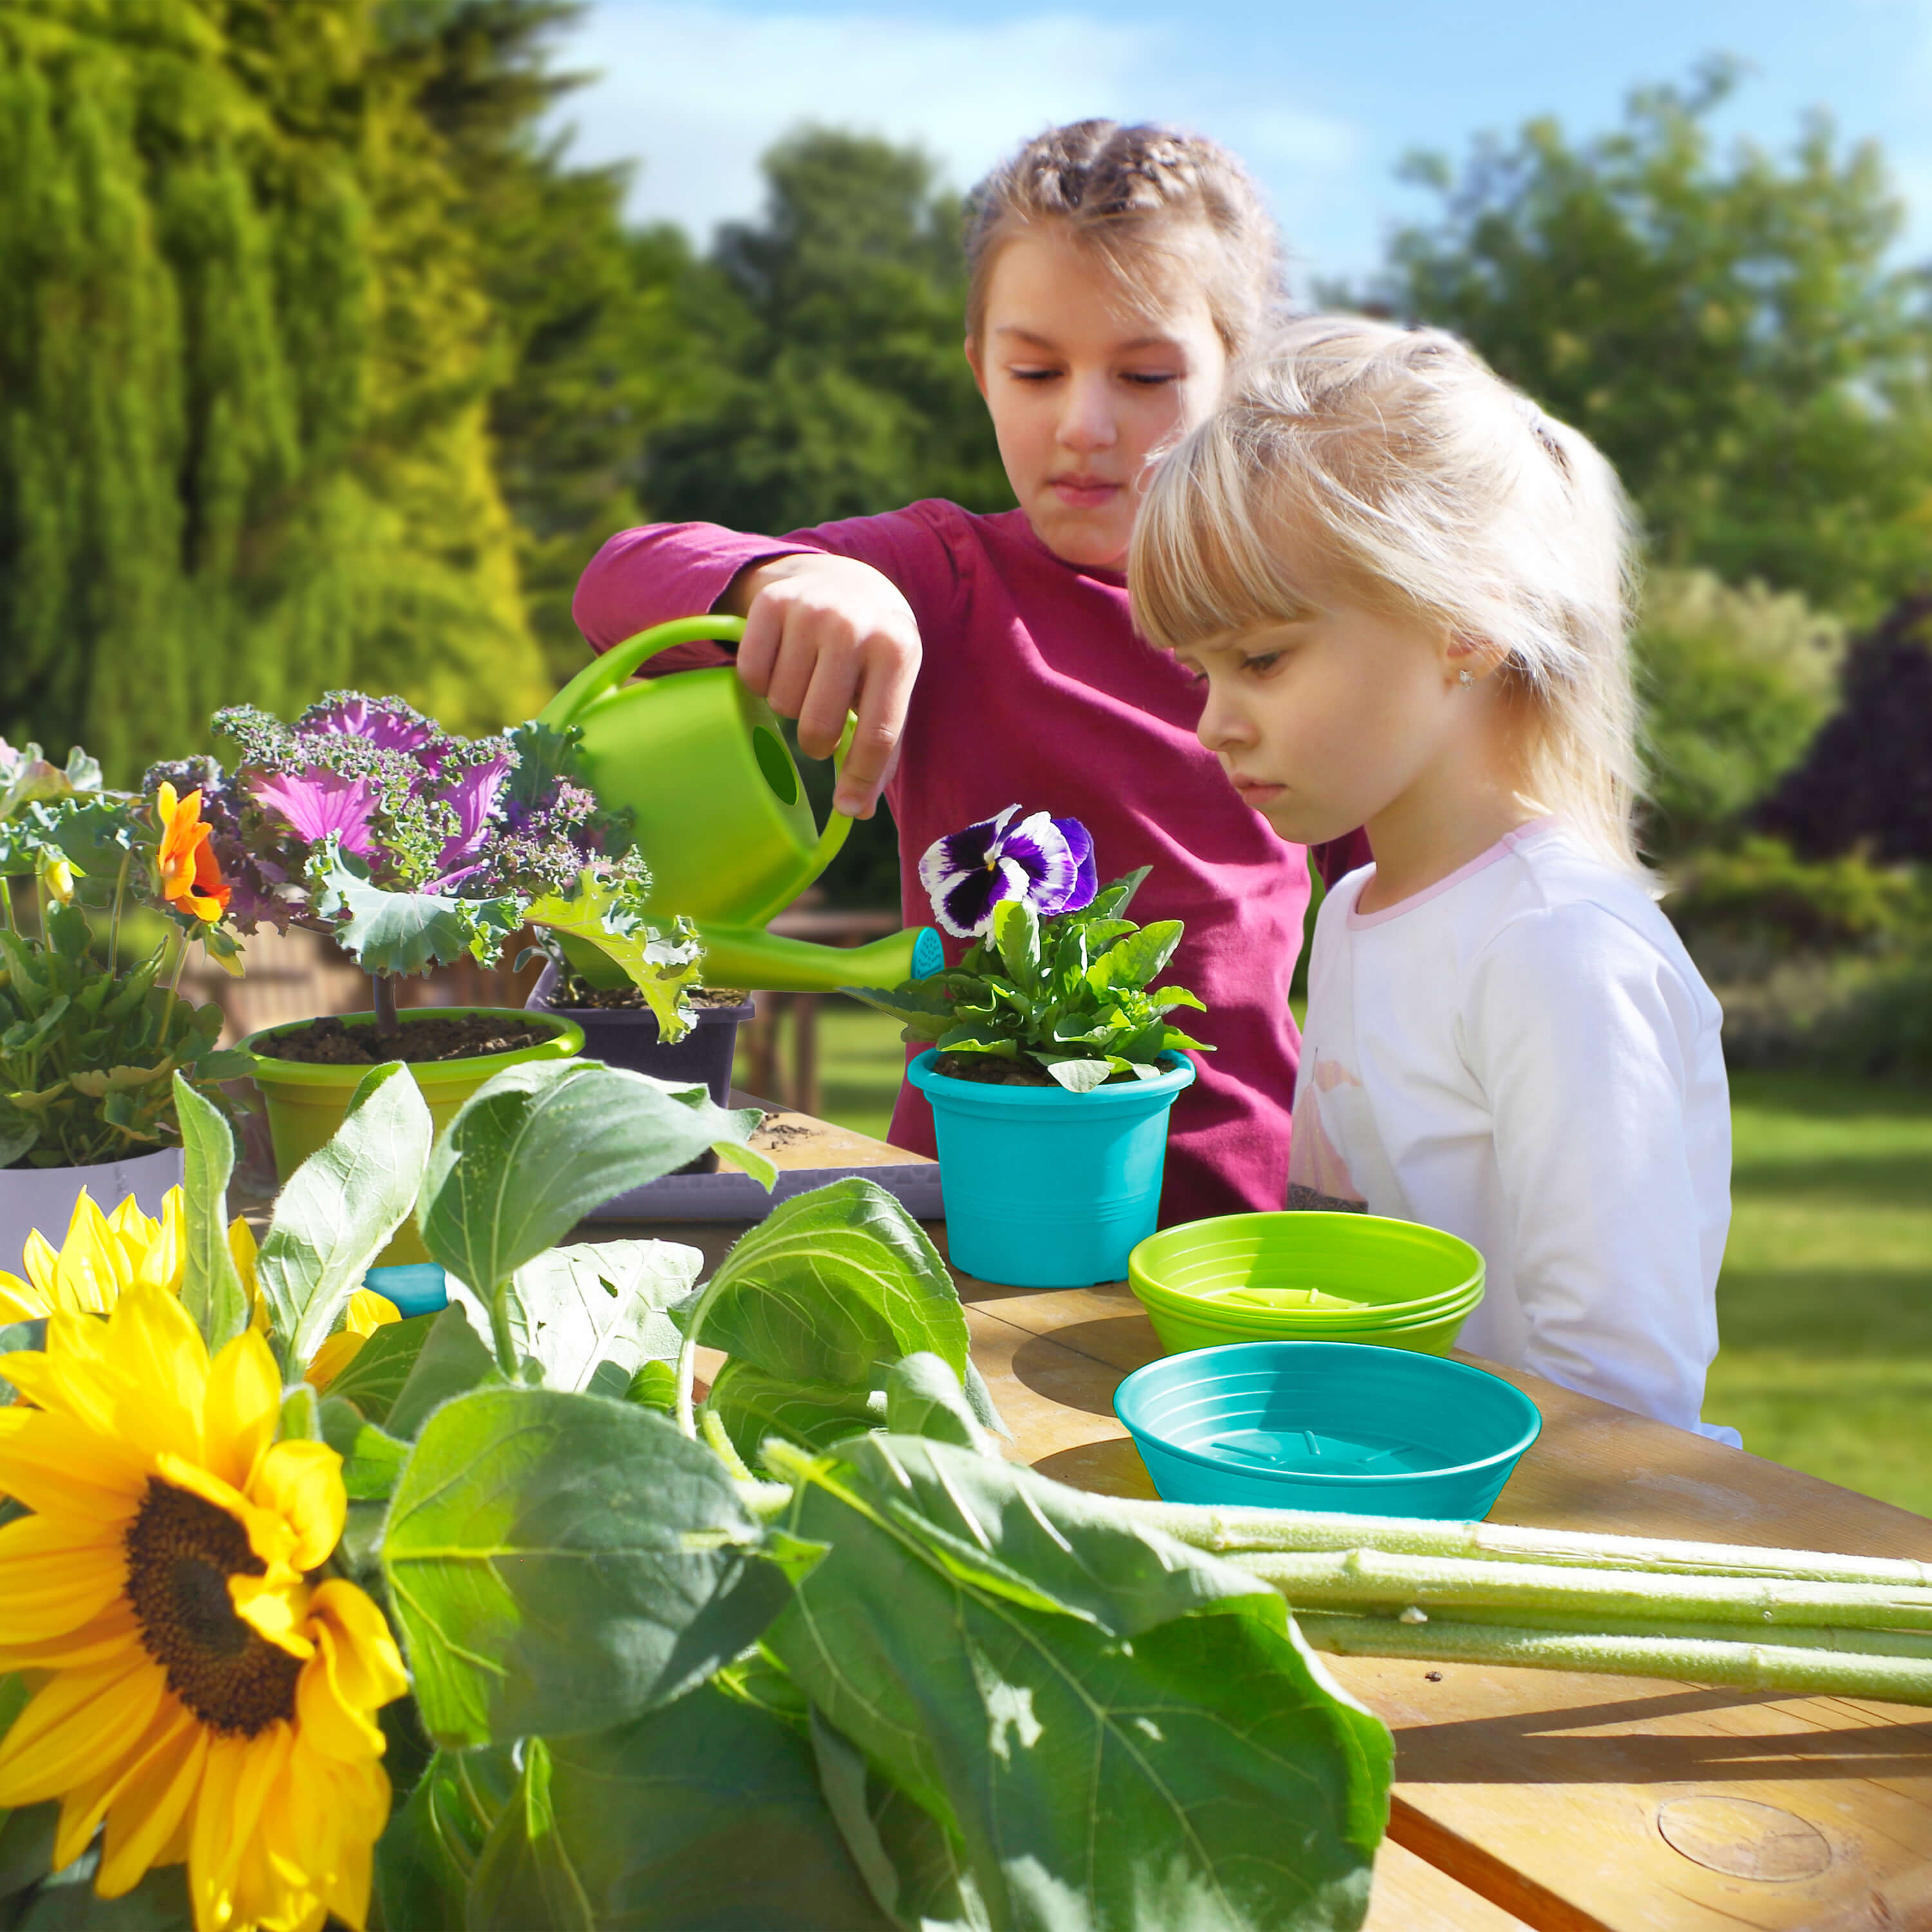 Gardenico Tuinset voor kinderen met bloempotten en tuingereedschap - 24 delig 